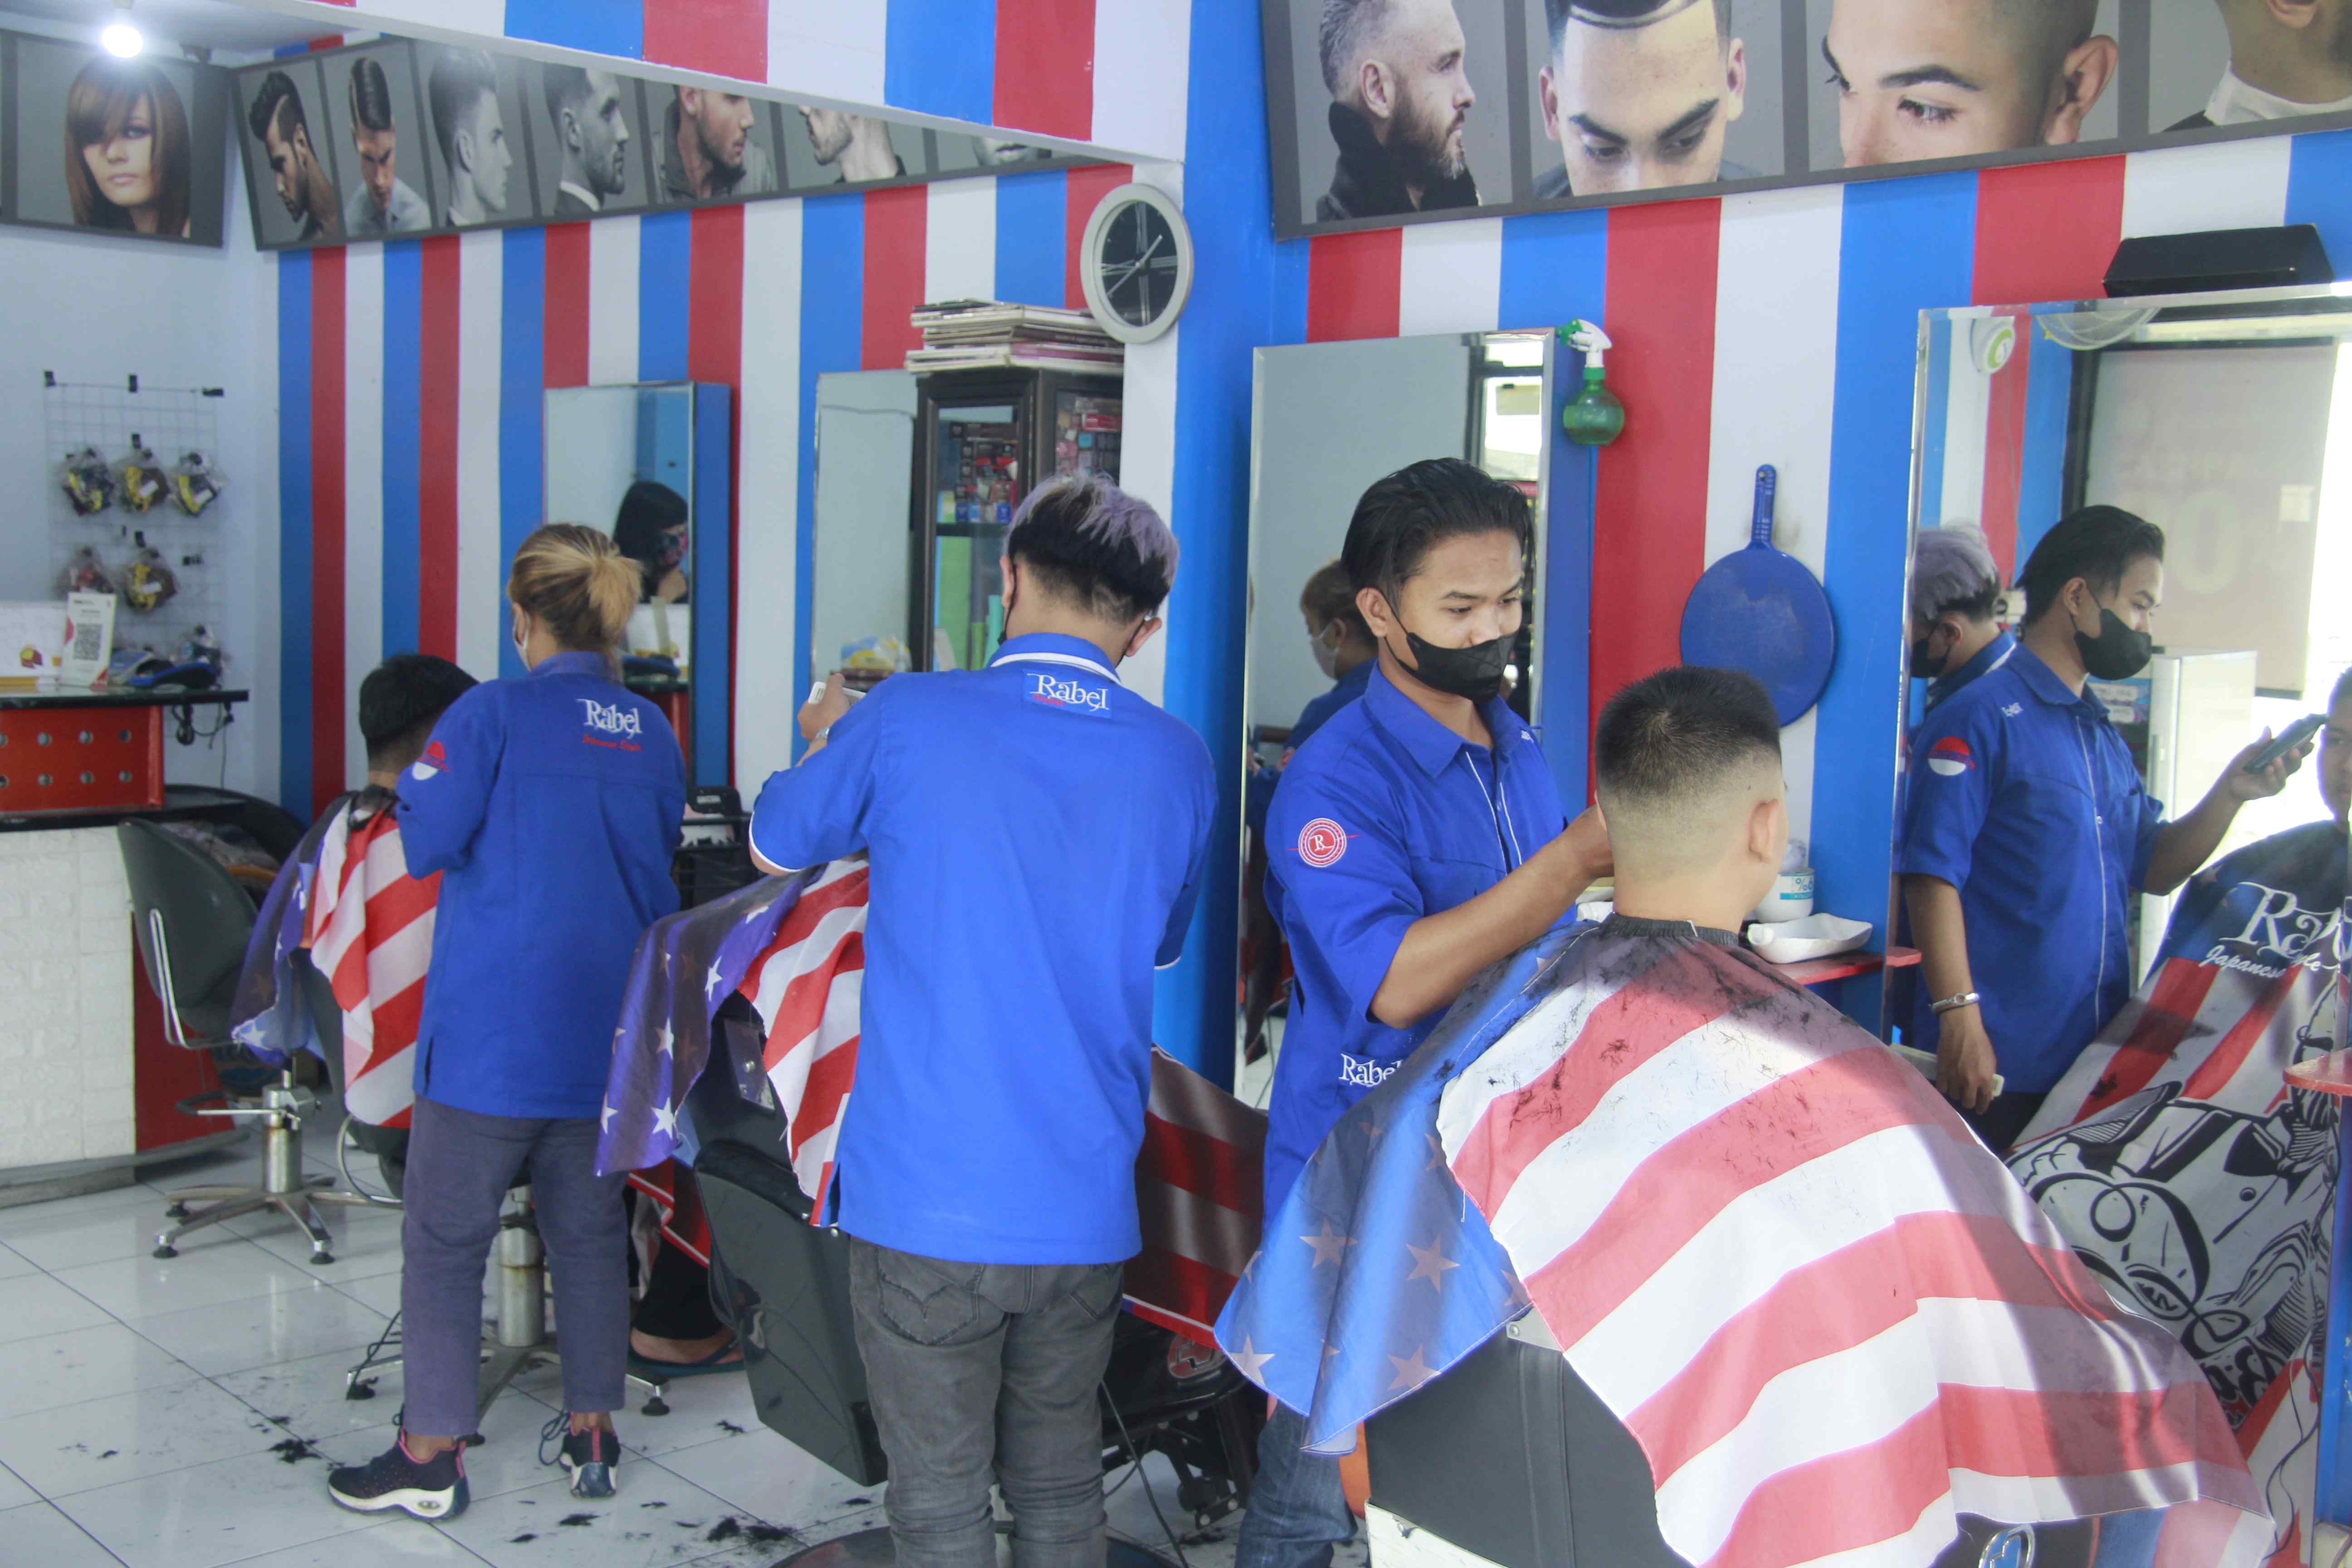 Tempat Cukur Rambut Di Kecamatan Lowokwaru Terbaik